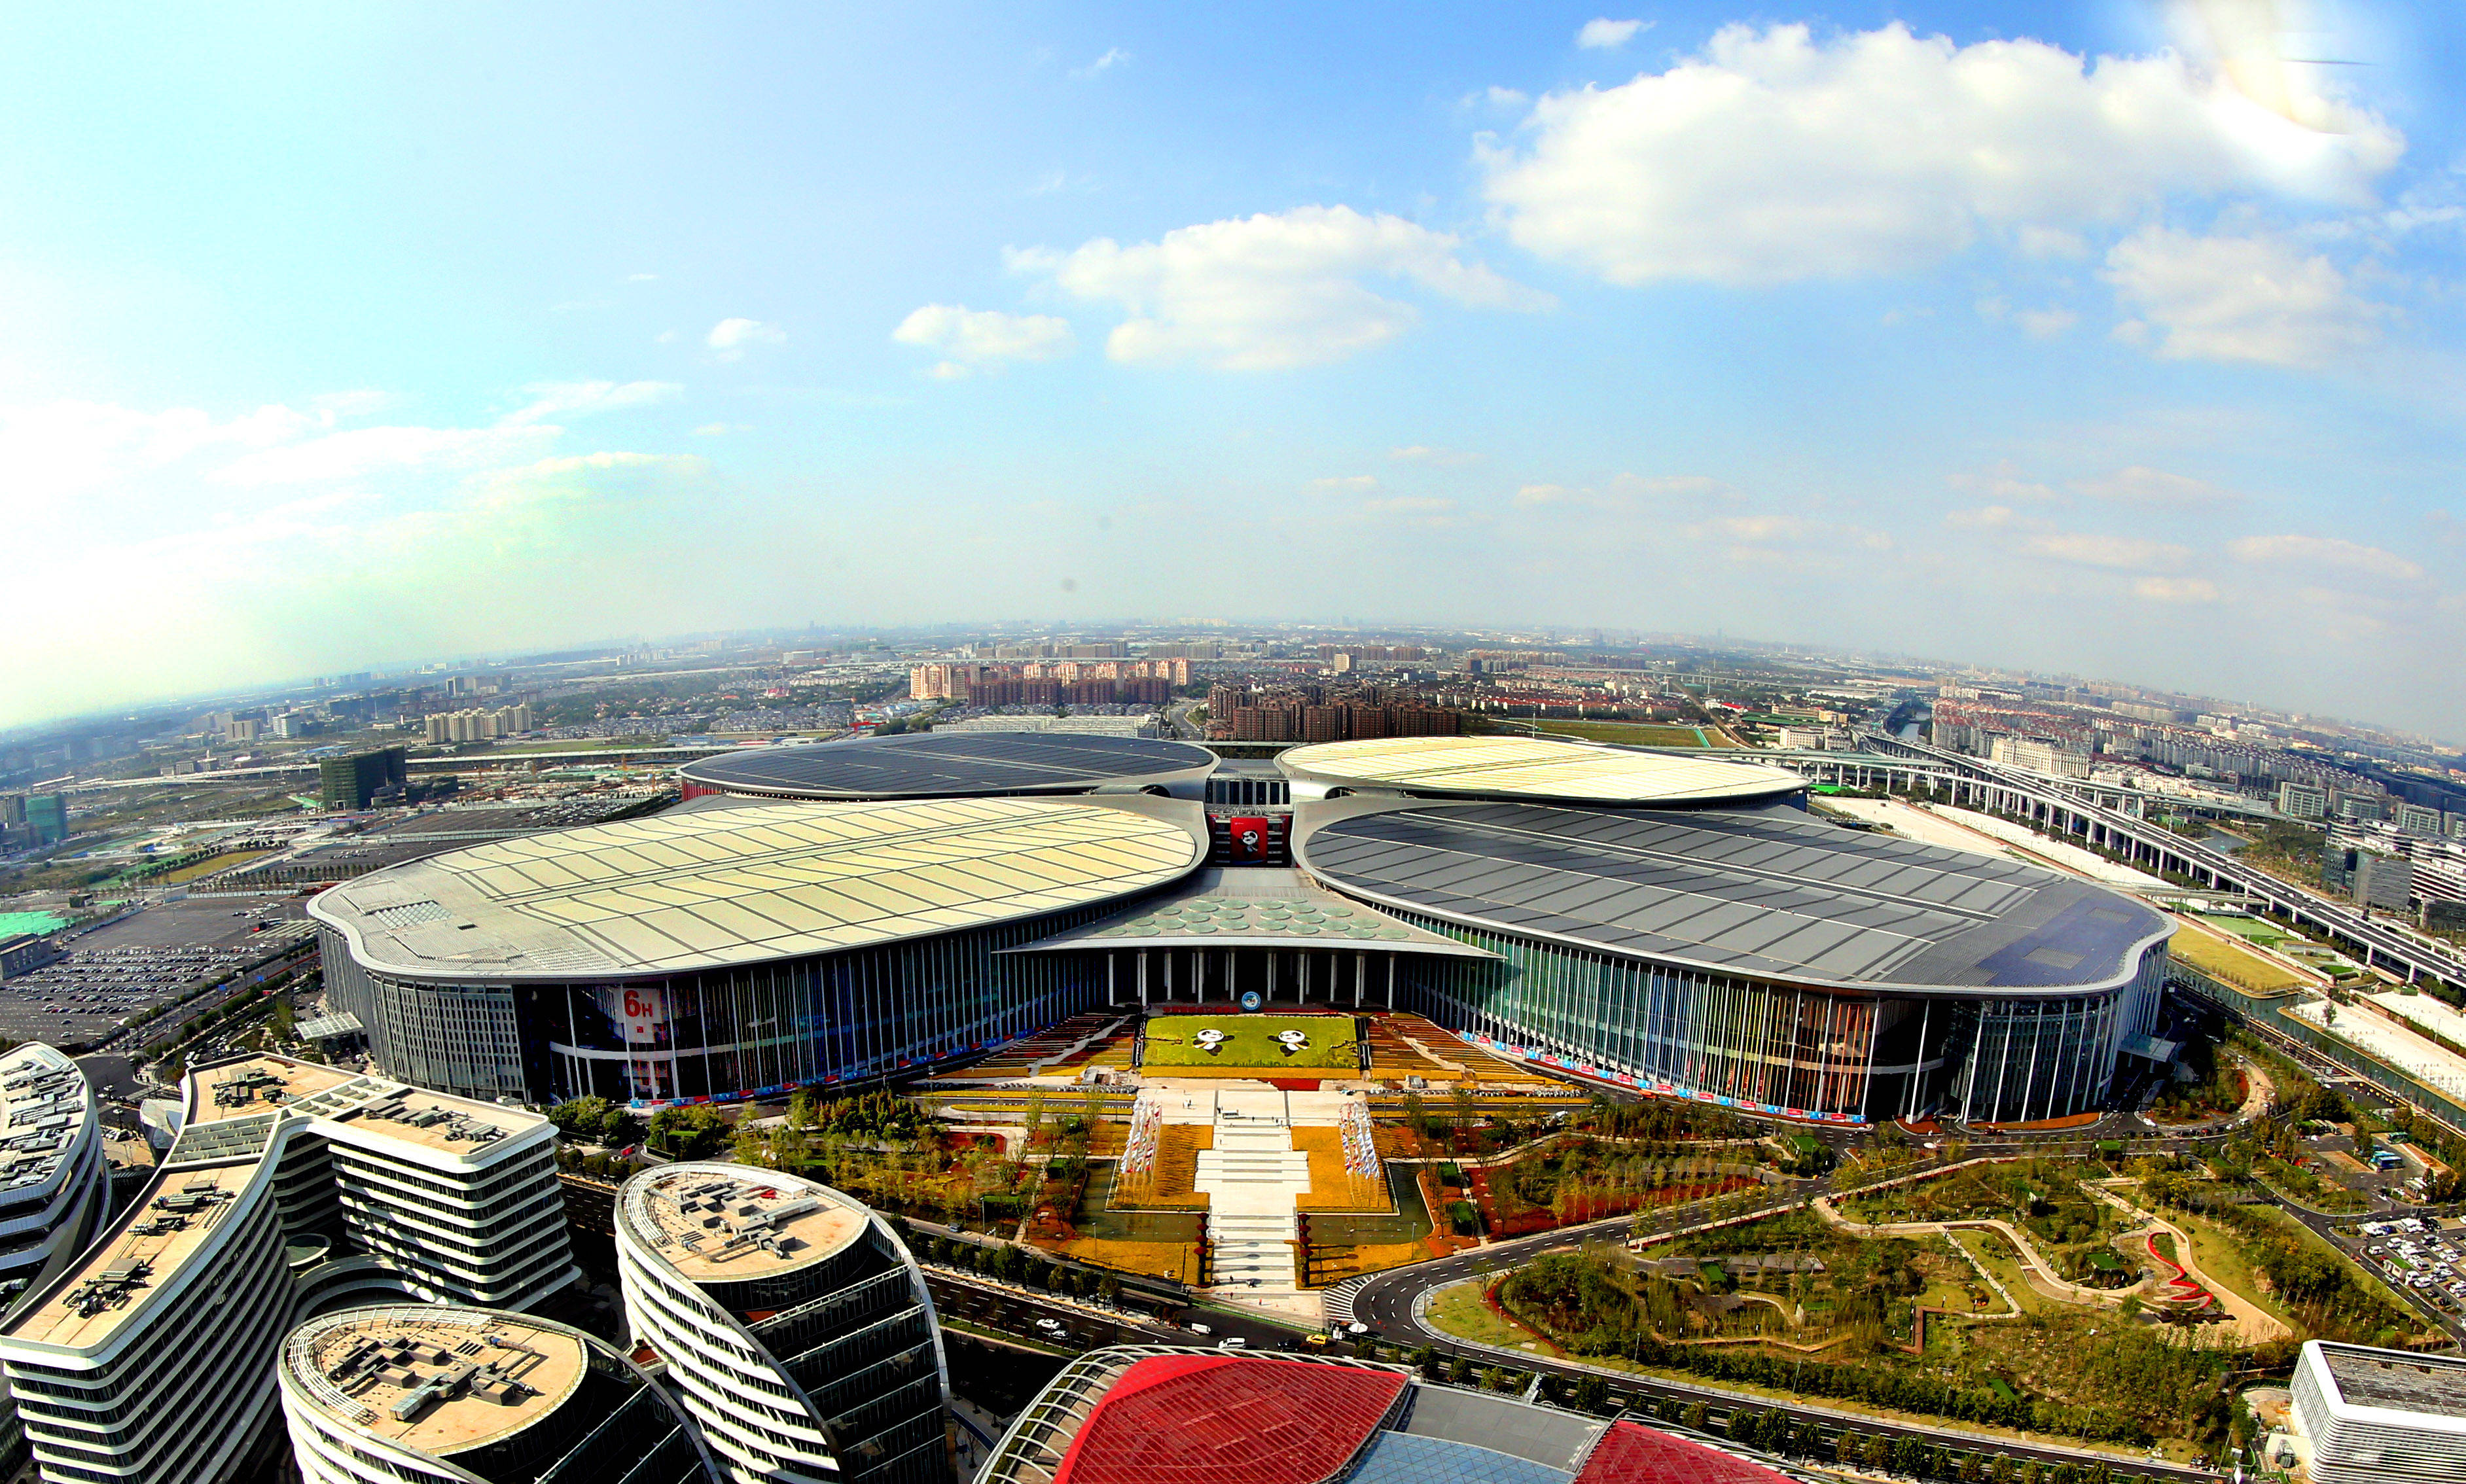 月19日拍摄的首届中国国际进口博览会举办场地——国家会展中心(上海)